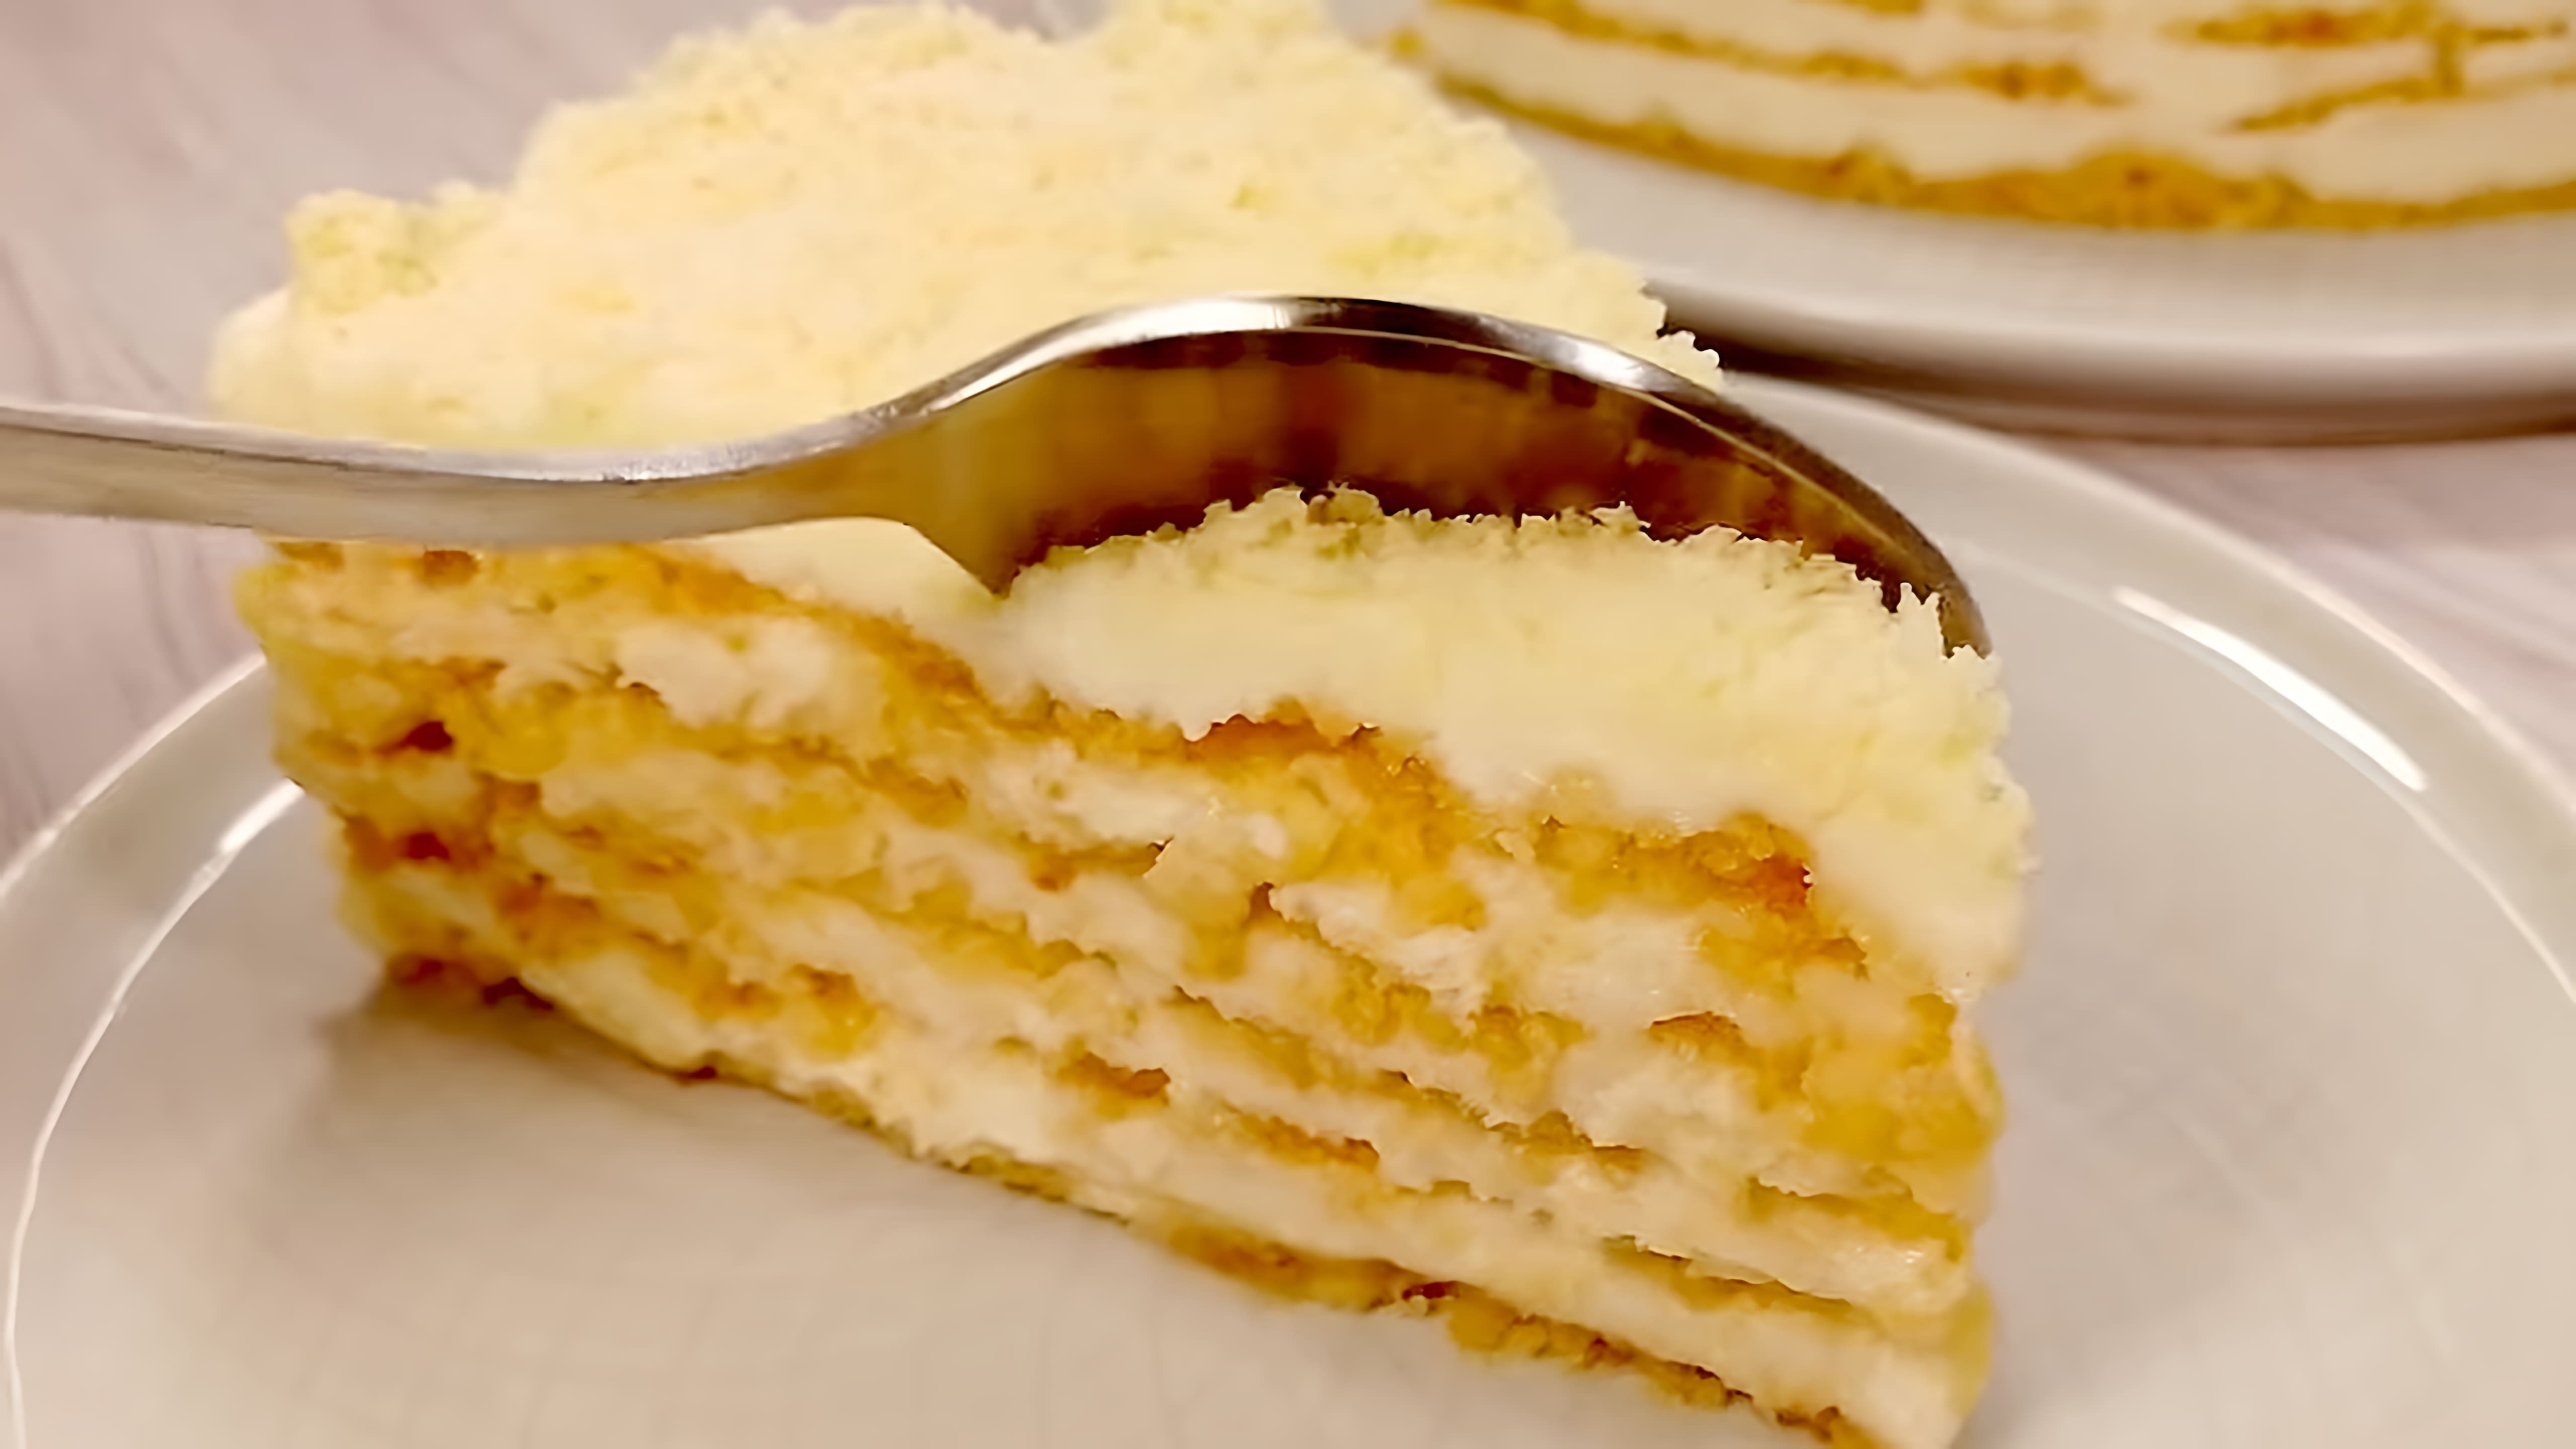 В этом видео демонстрируется рецепт приготовления торта "Пломбир" без использования духовки